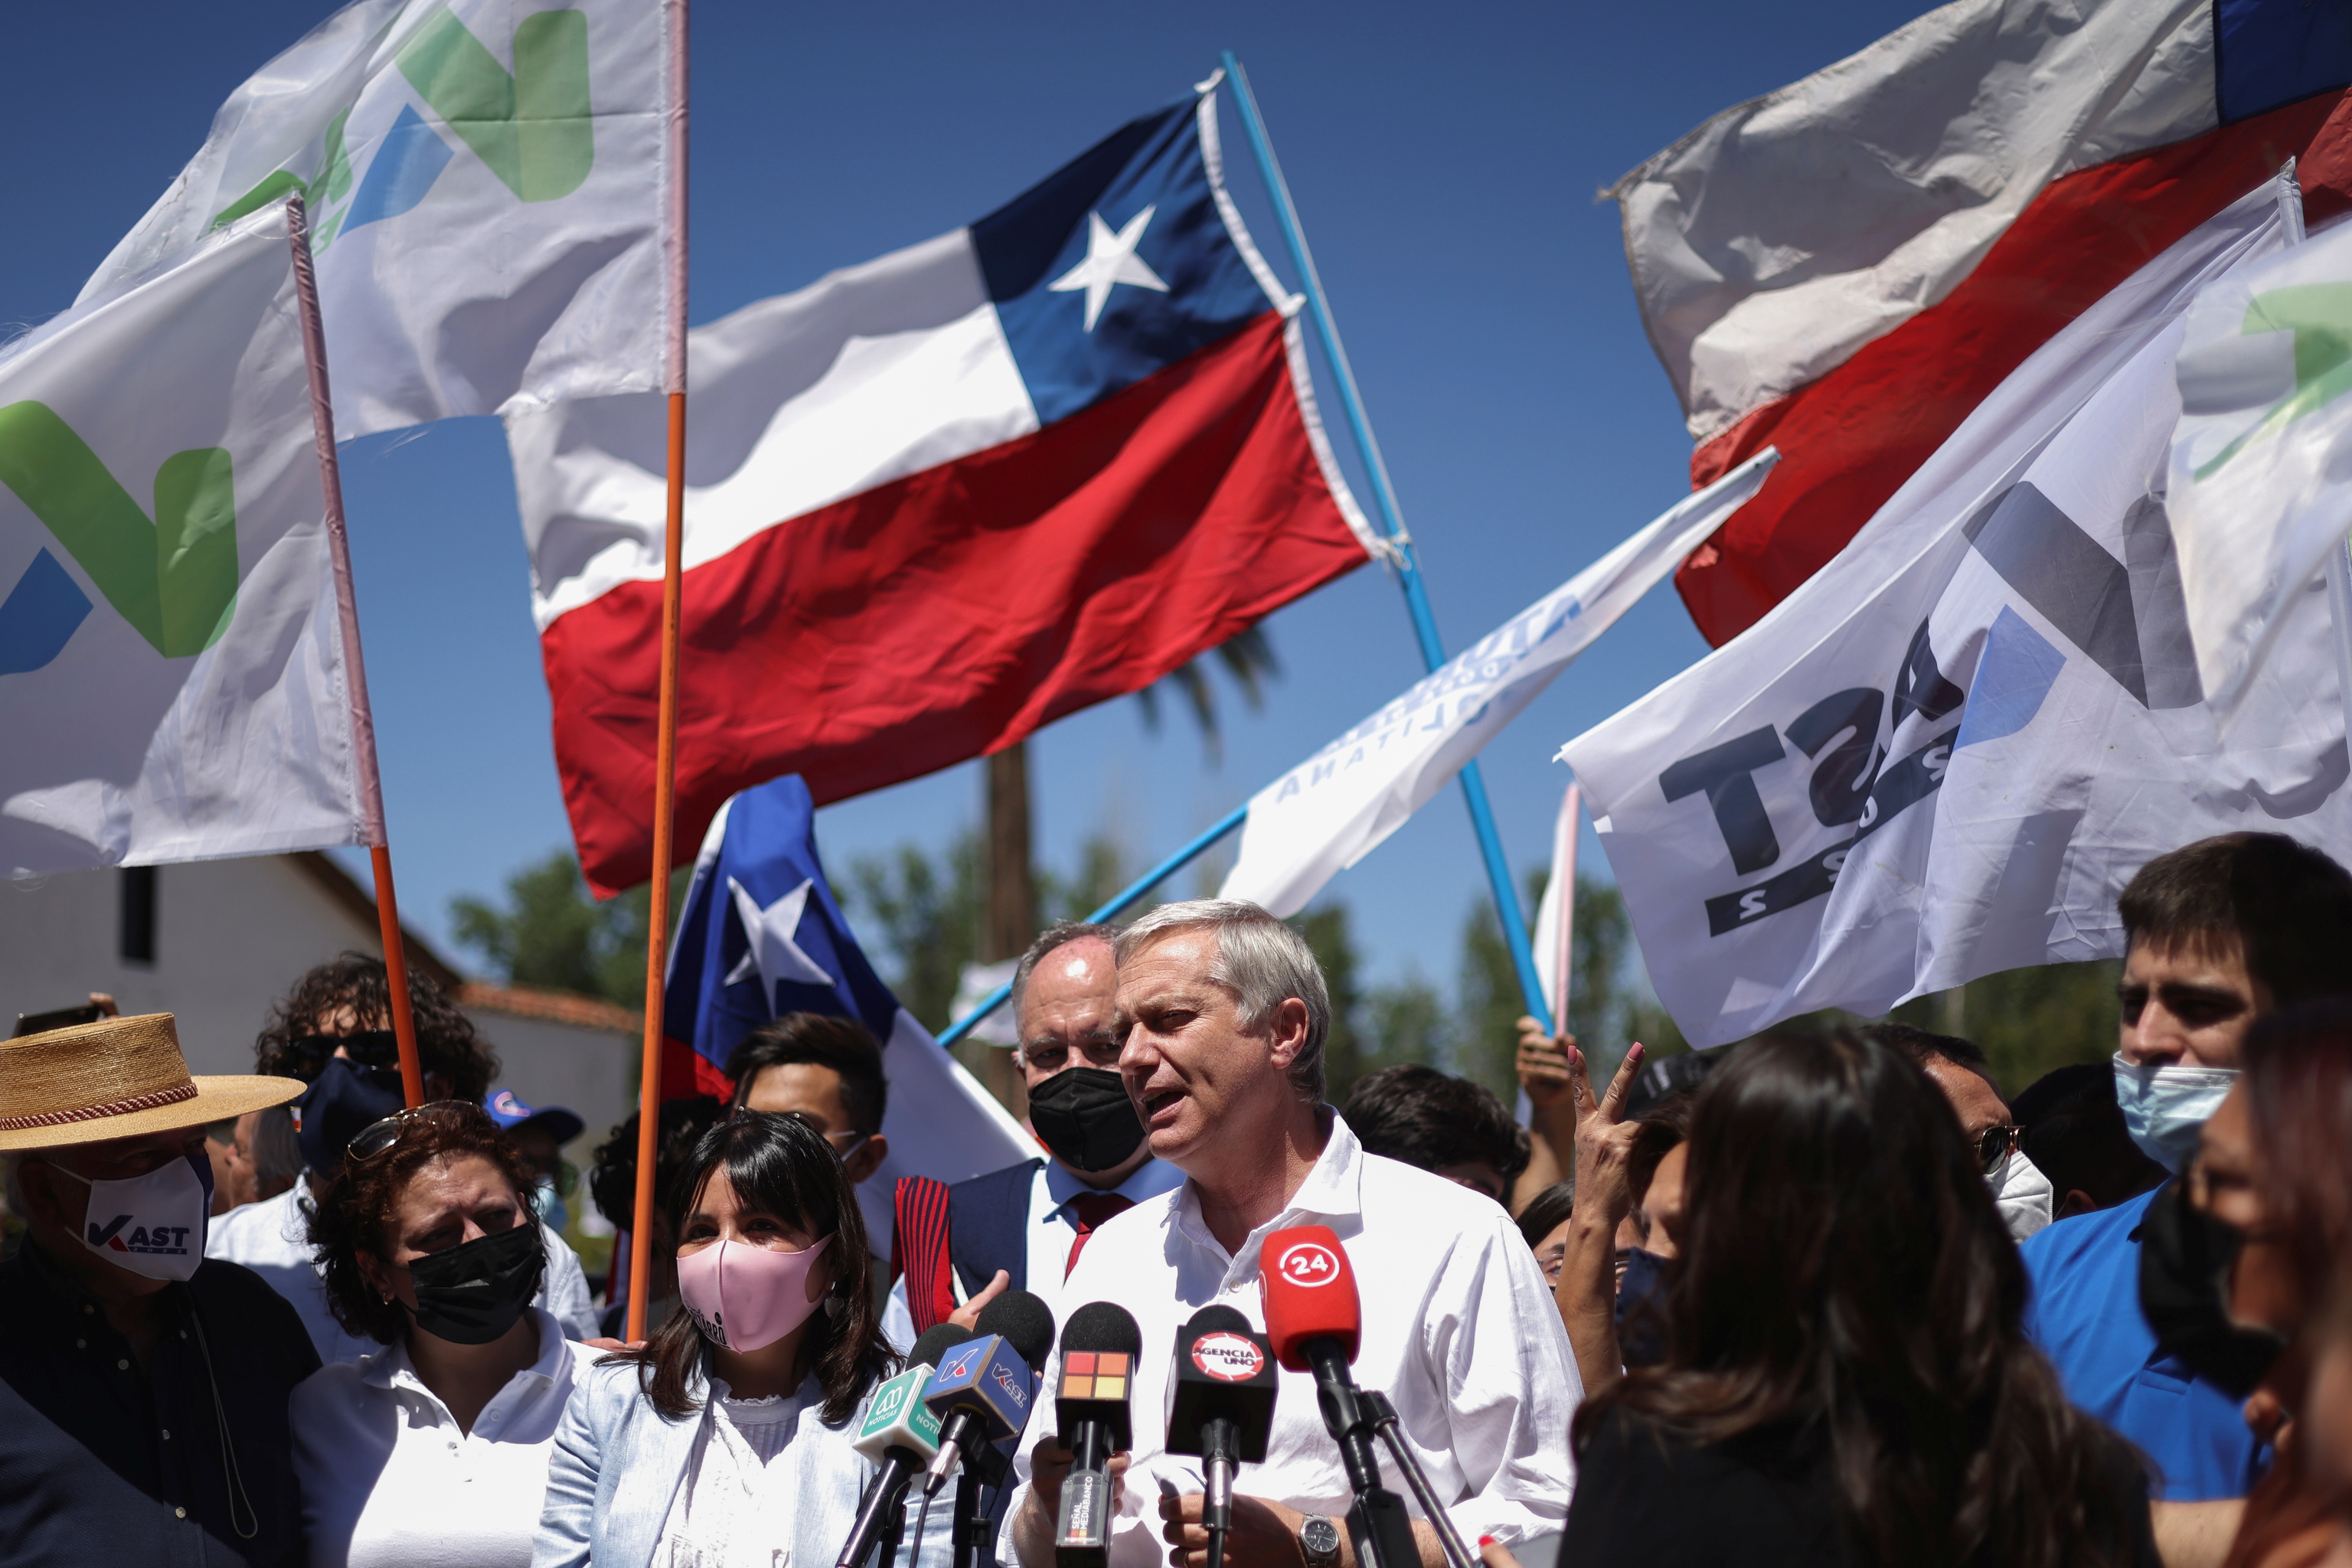 El candidato presidencial chileno de extrema derecha, José Antonio Kast, en un mítin.